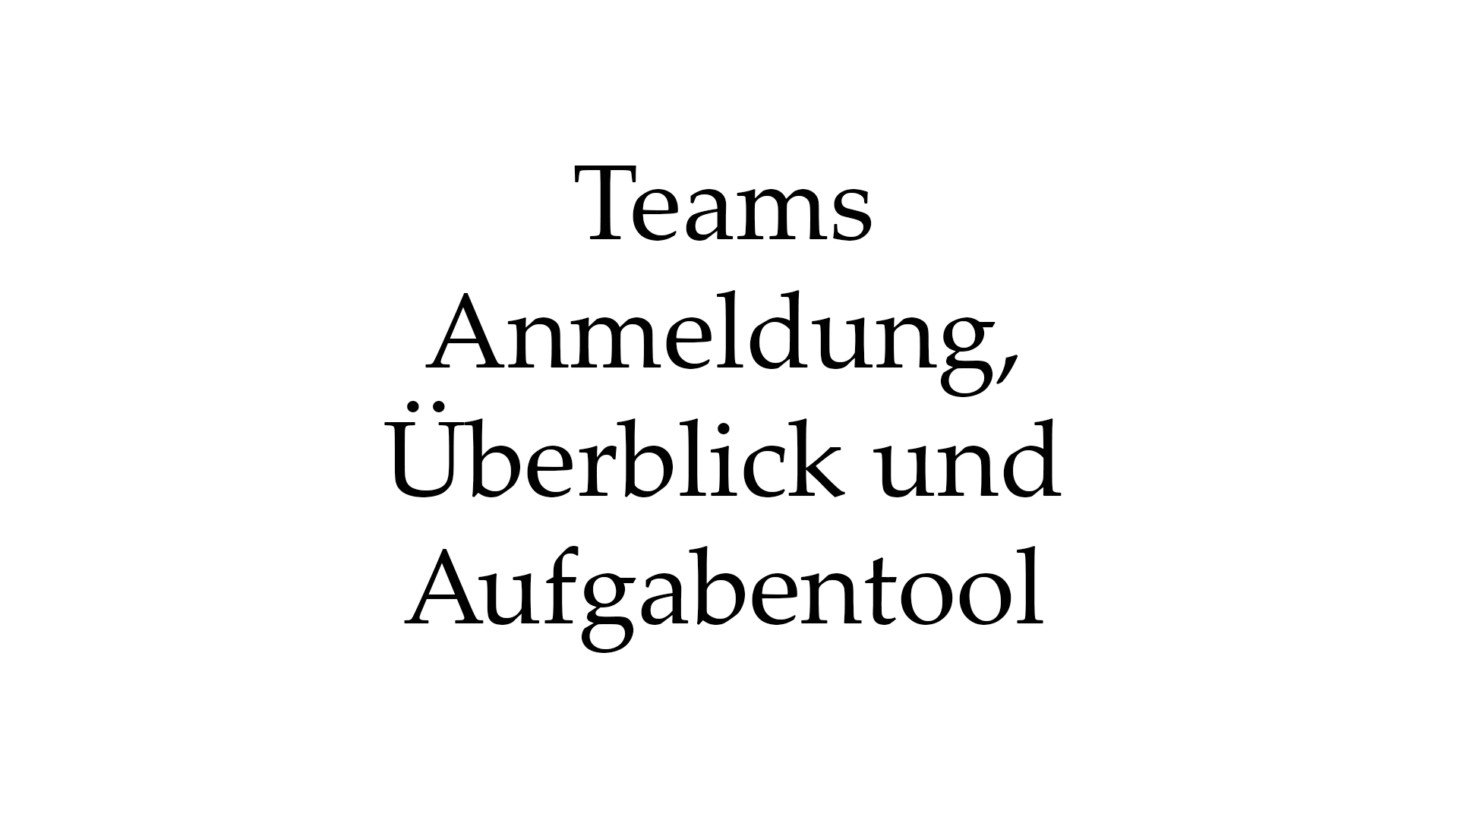 teams: Anmeldung, Überblick und Aufgabentool